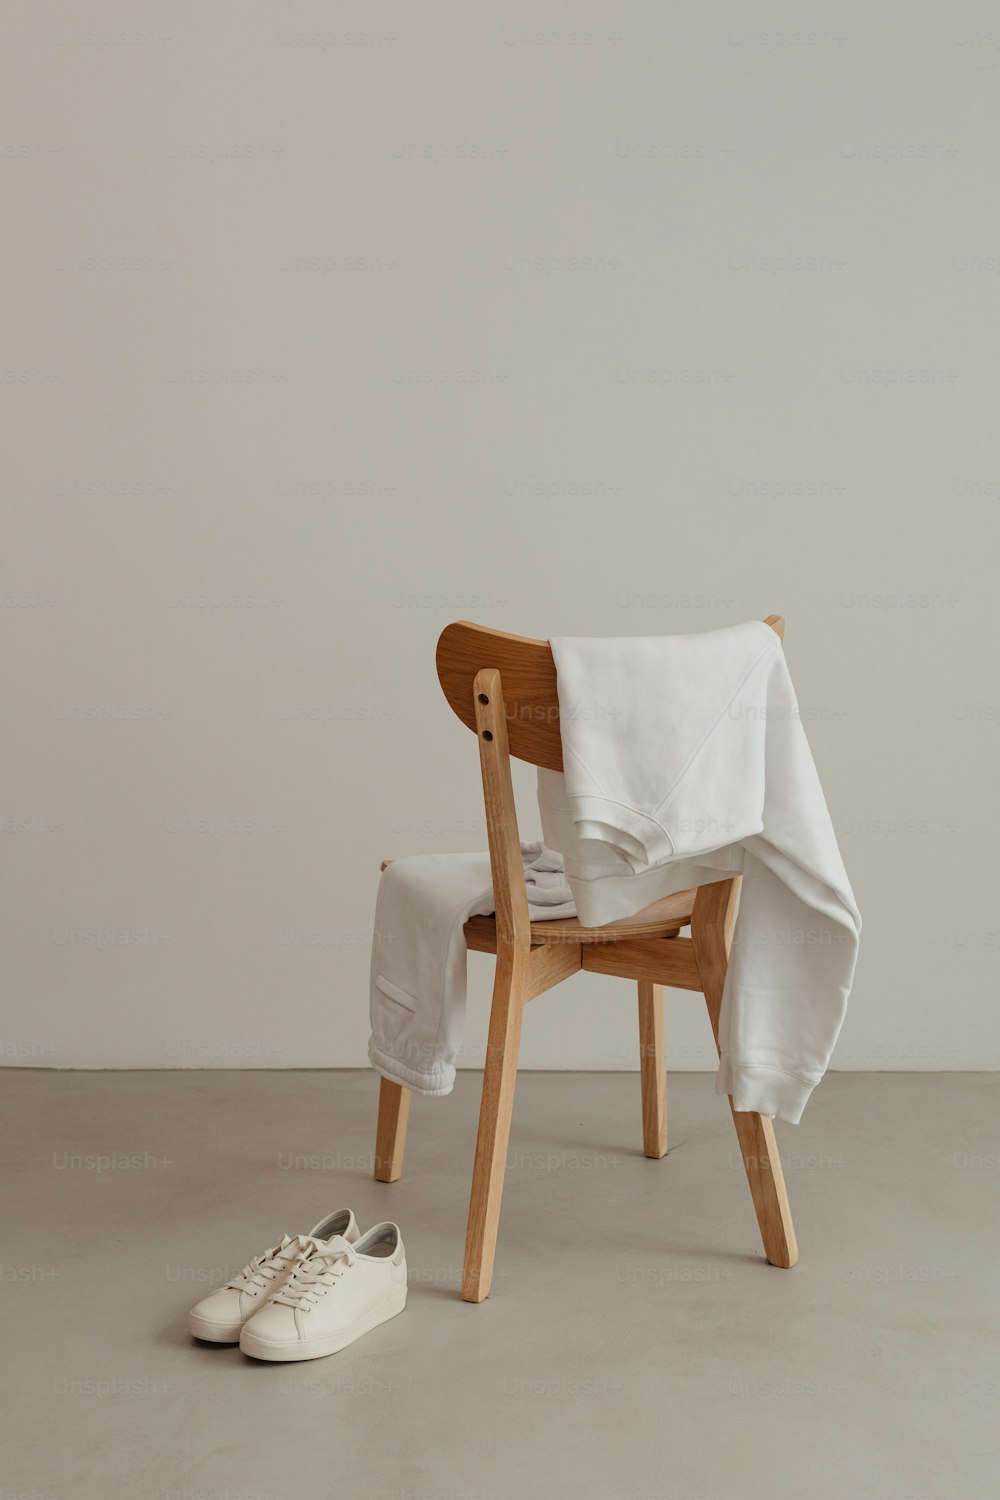 흰 천을 씌운 나무 의자